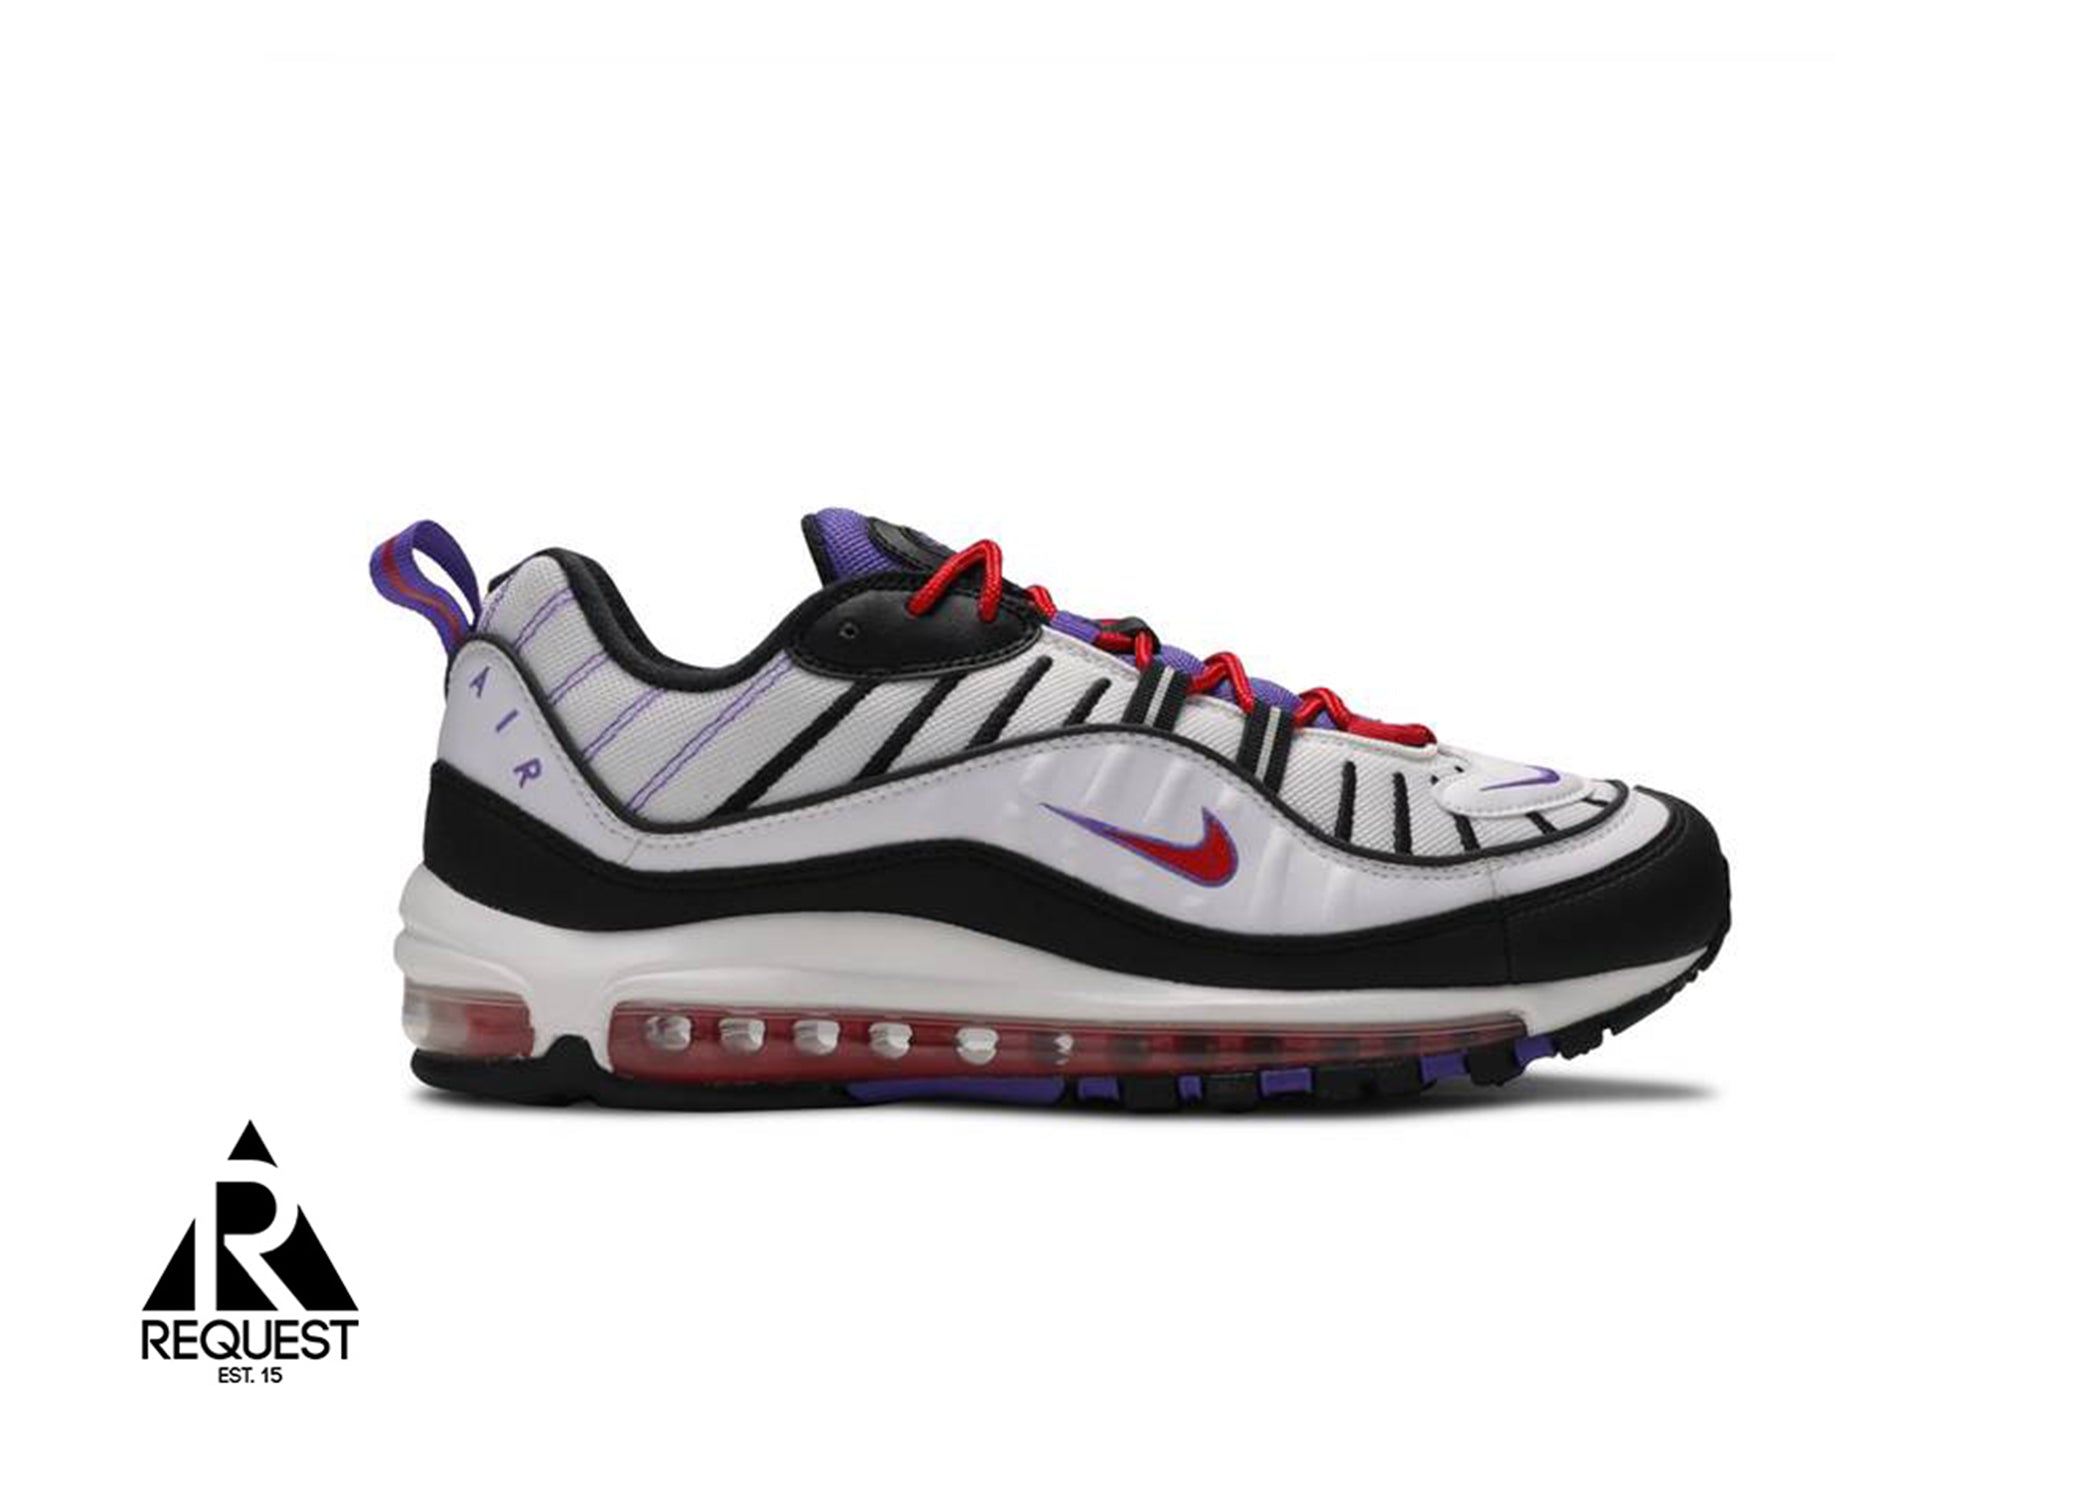 Nike Air Max 98 “Raptors”